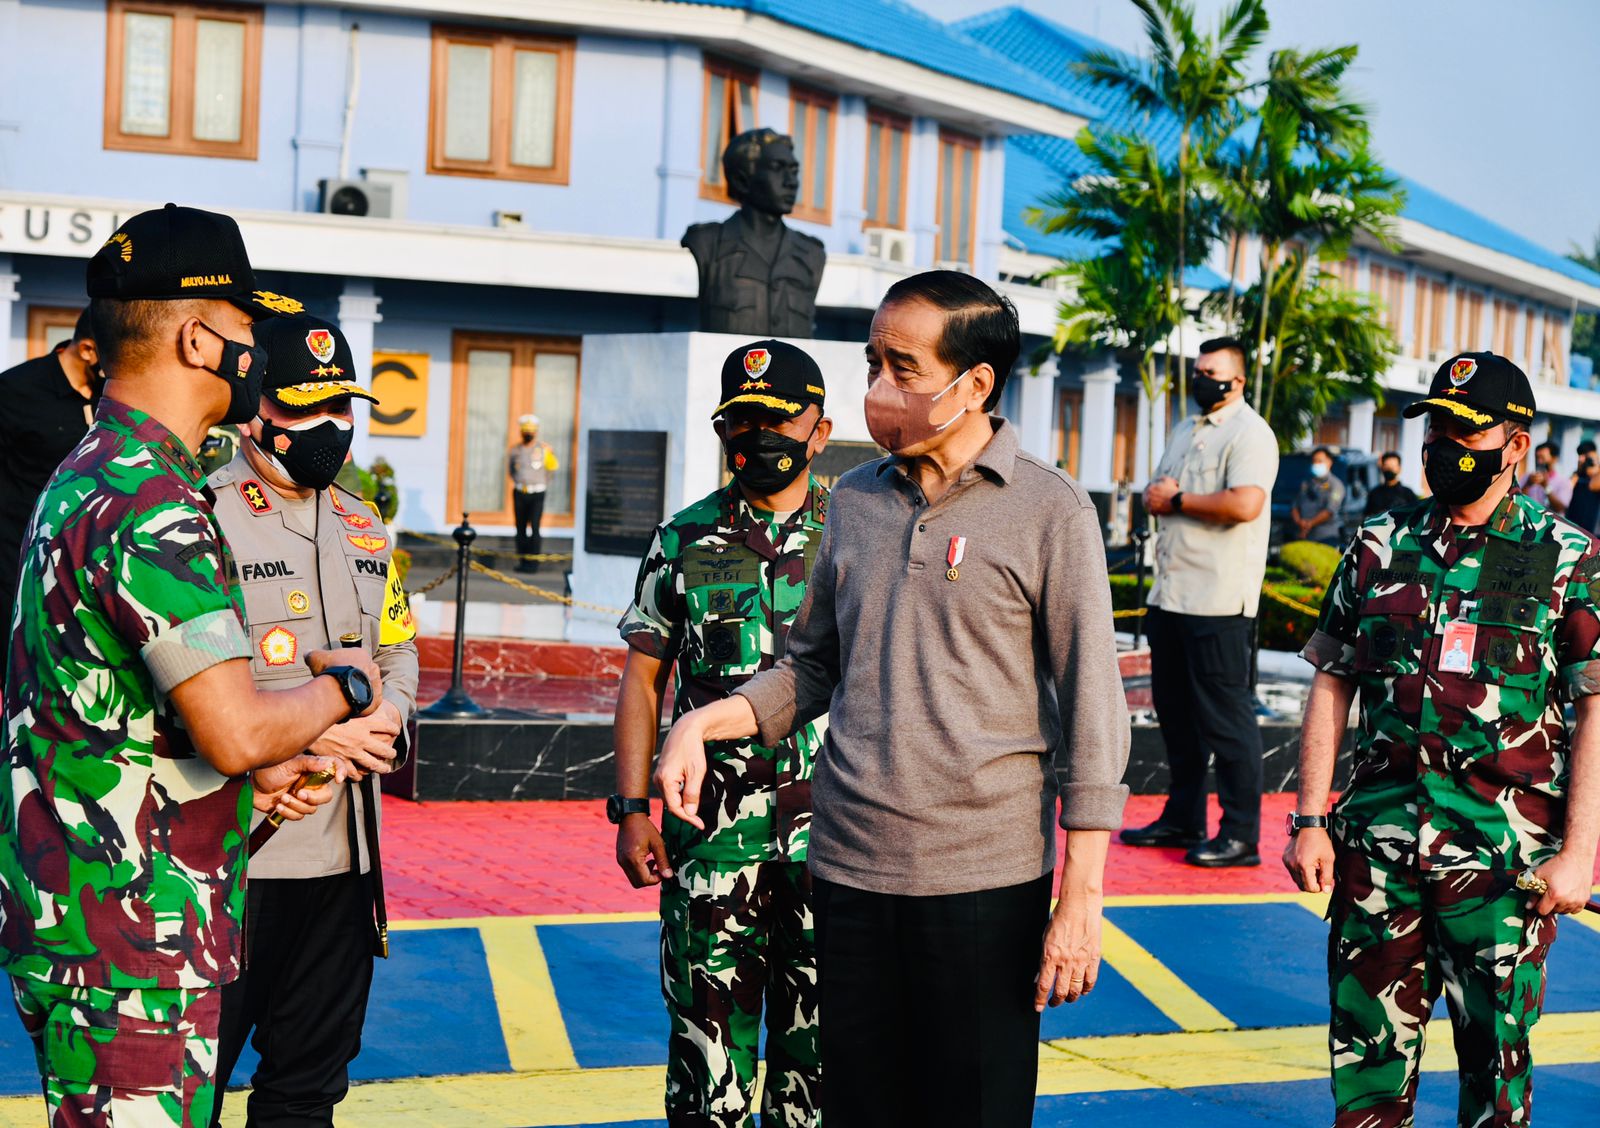 Presiden RI Jokowi tiba di Rumah Sakit Internasional Bali. (FOTO/Humas)